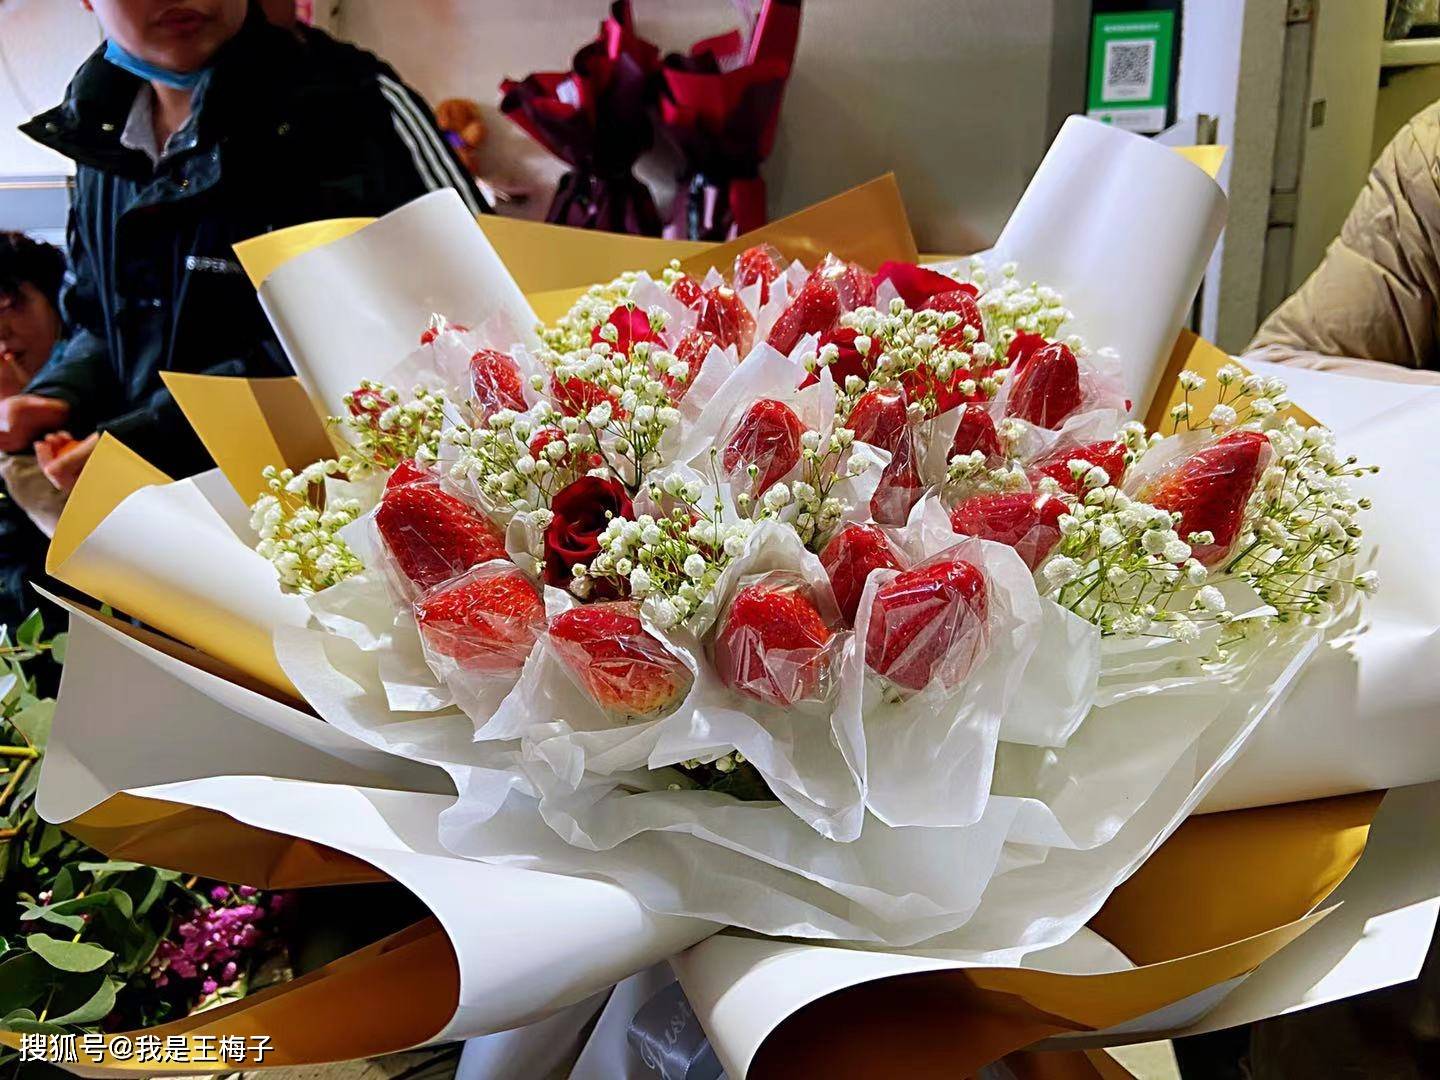 30元1斤草莓 经花店包装价格翻10倍 比玫瑰花还要贵 花束